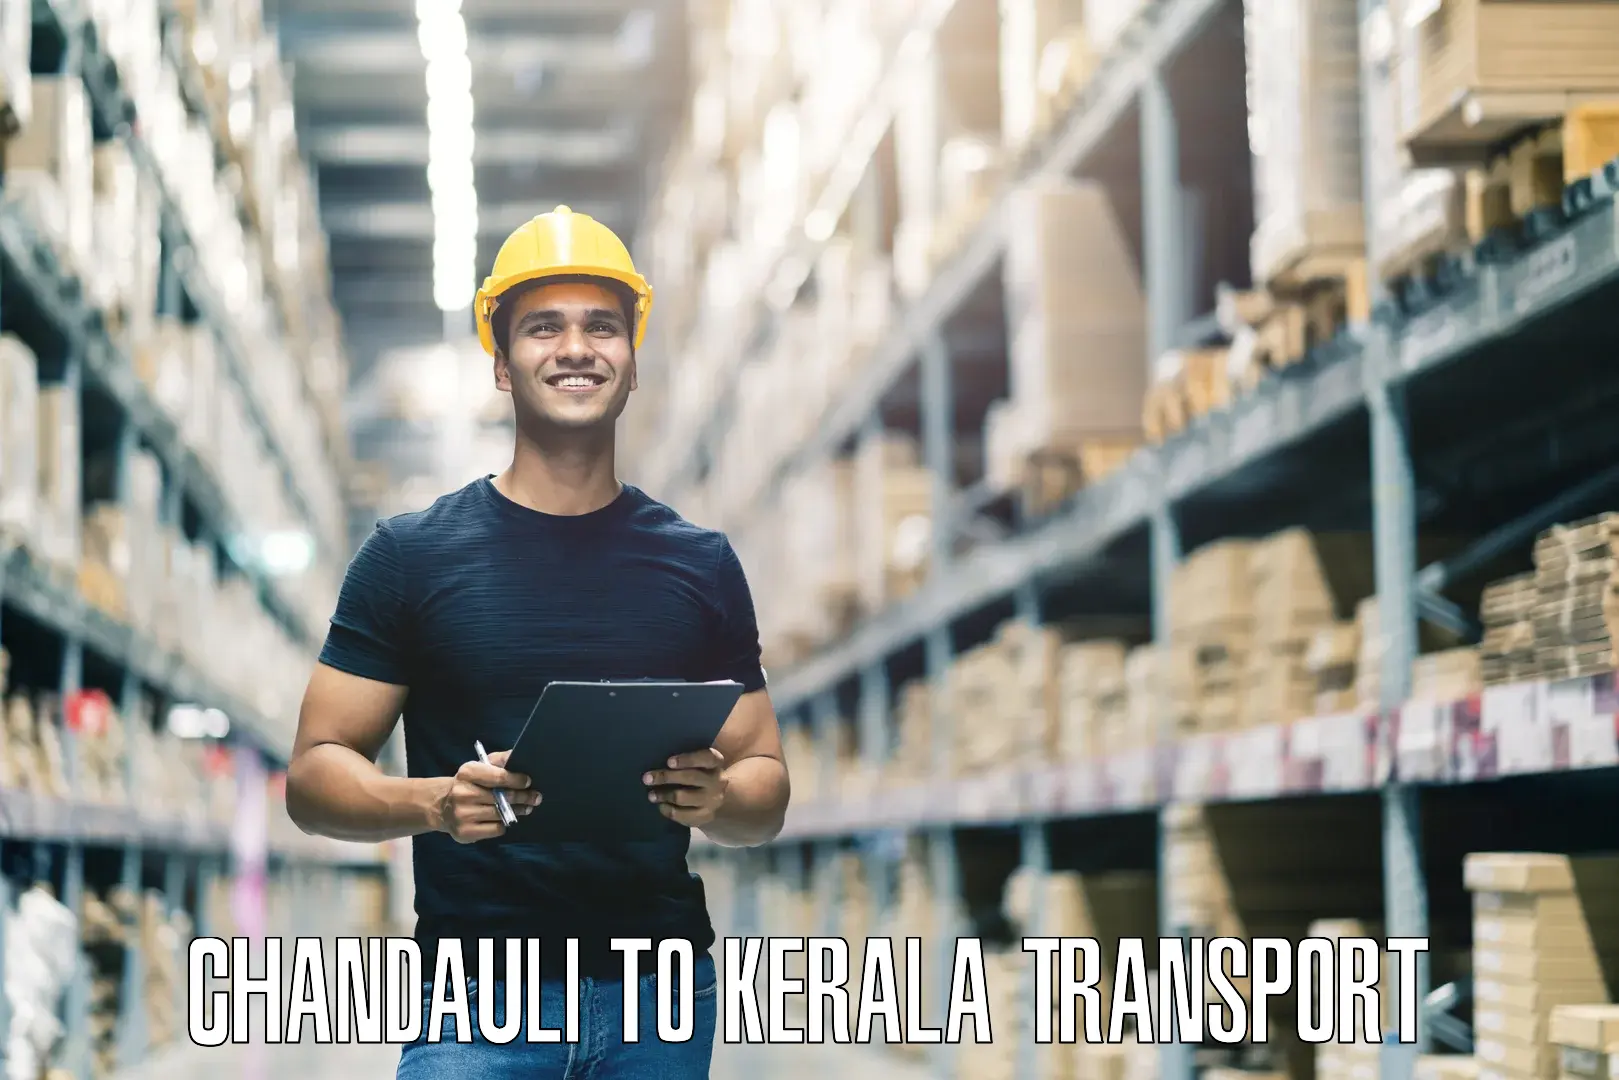 All India transport service Chandauli to Kottayam